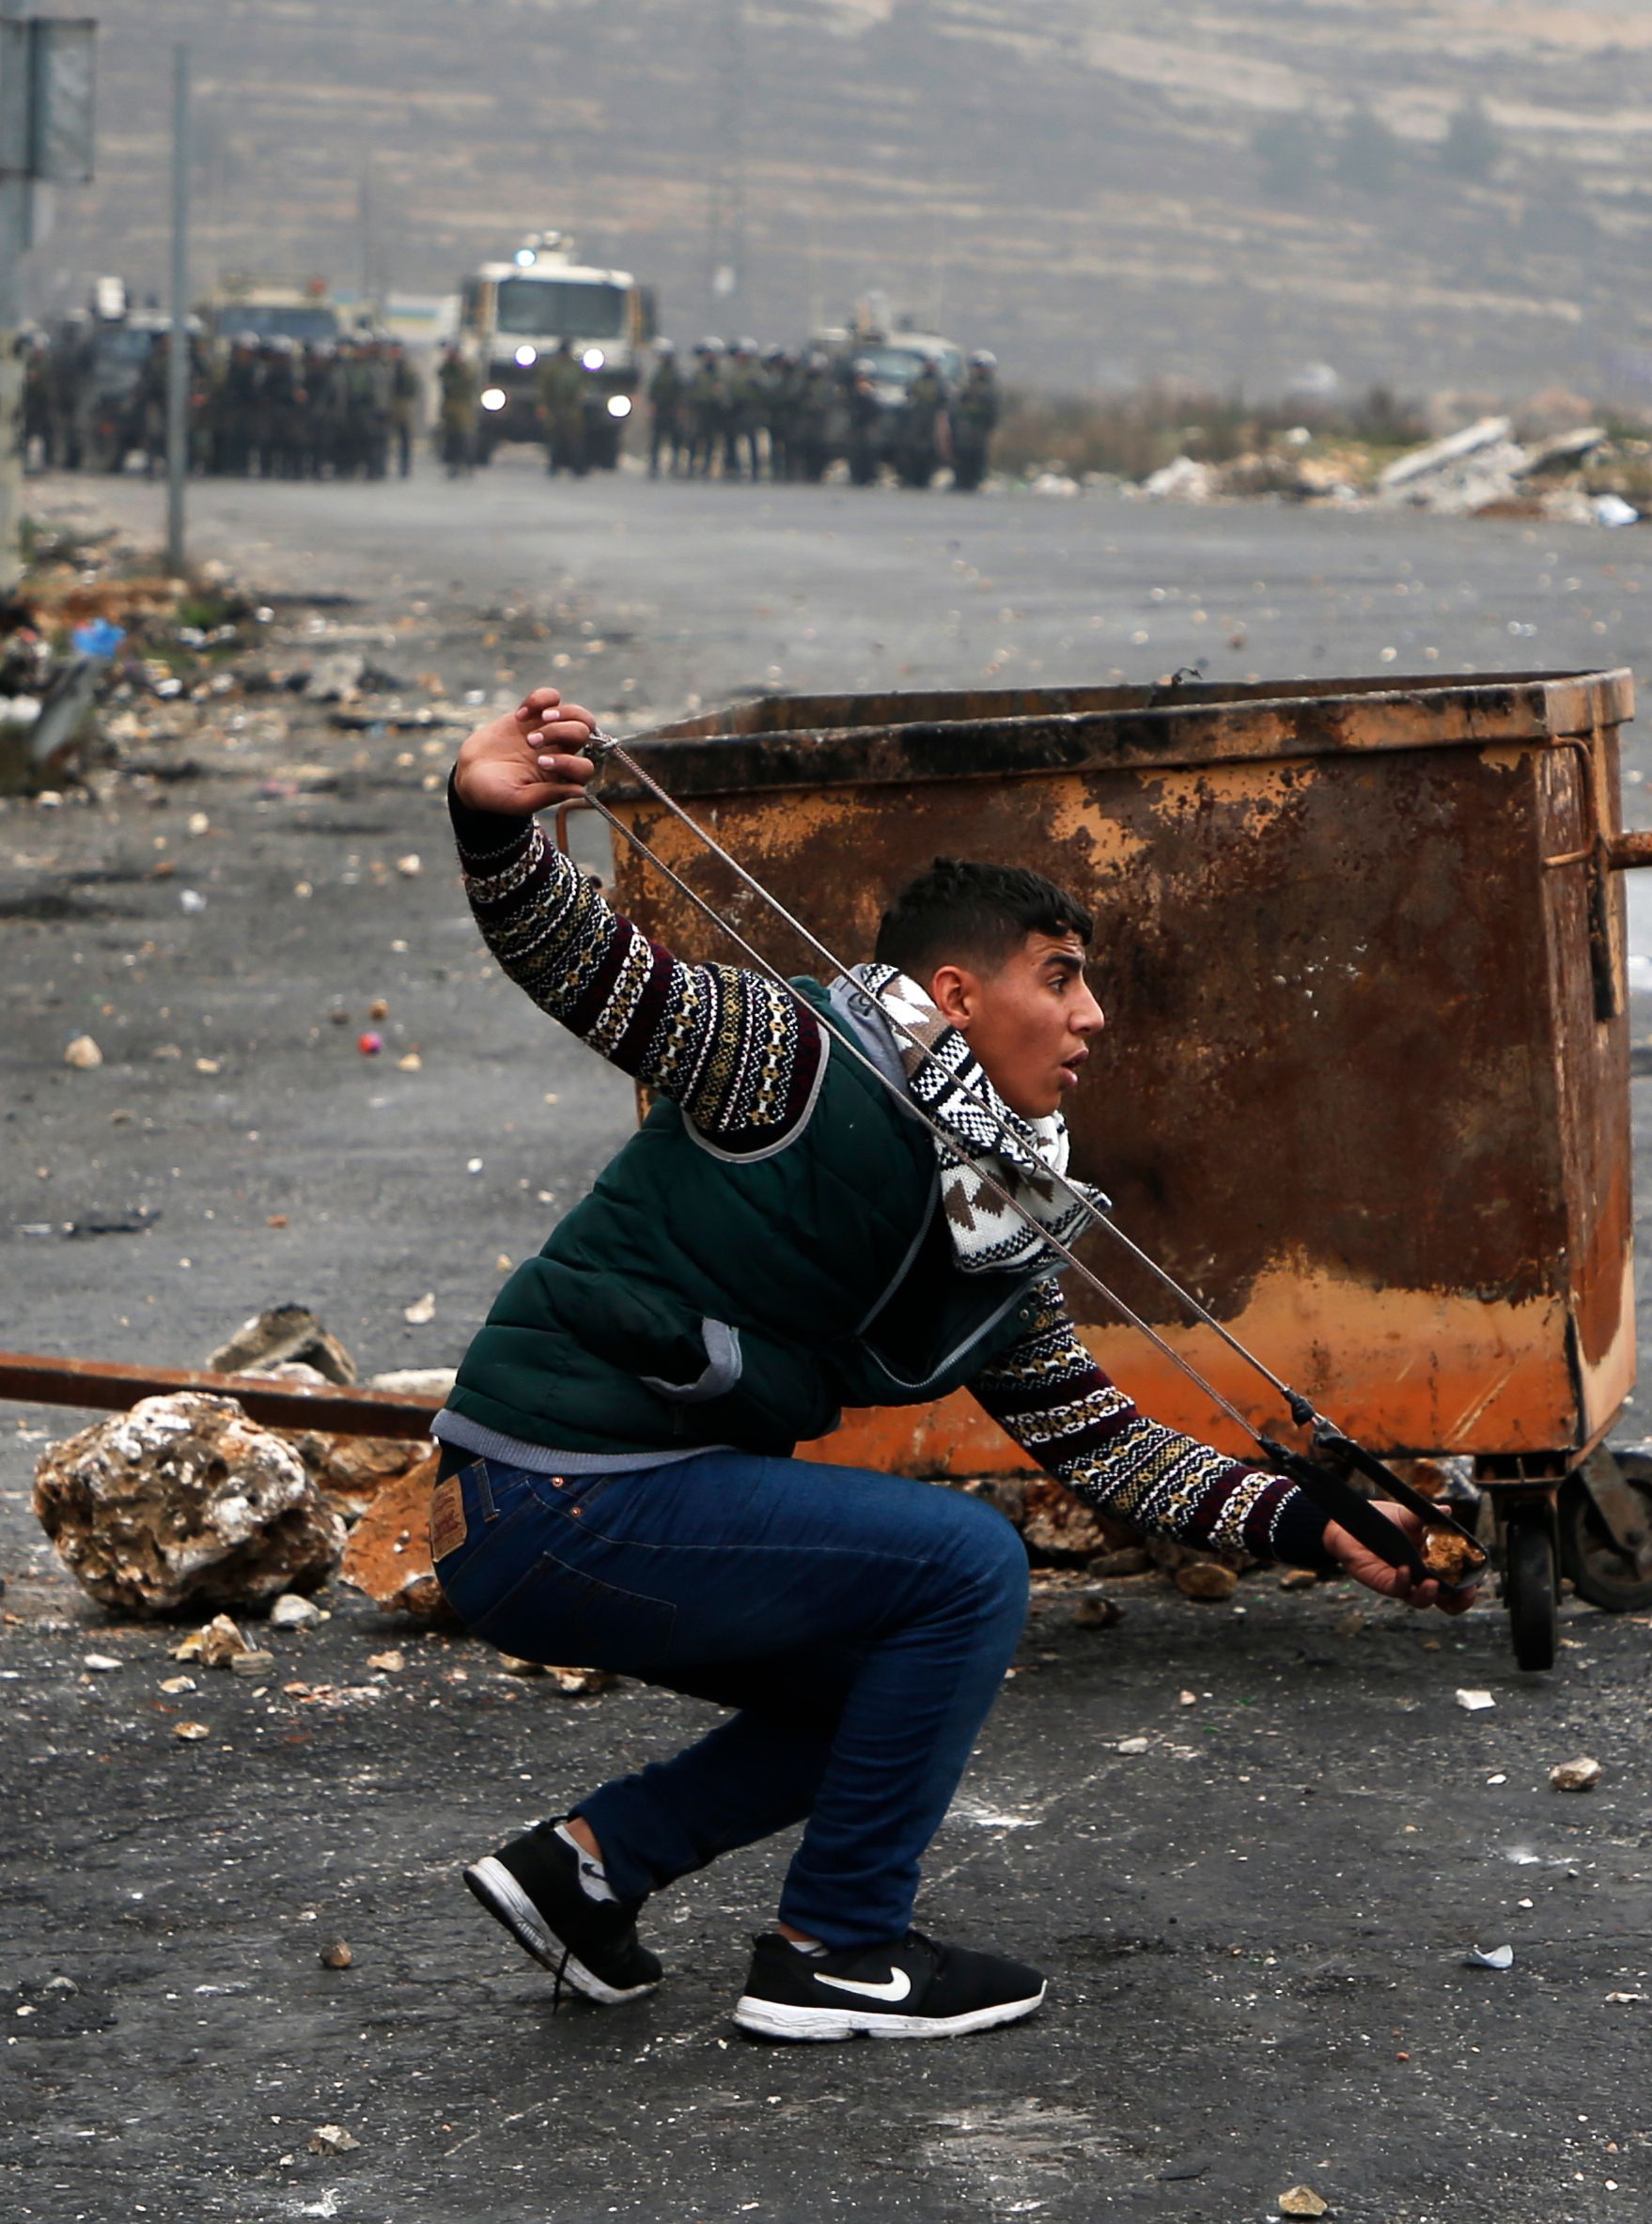 فلسطينيون يستخدمون الحجارة أمام قوات الاحتلال